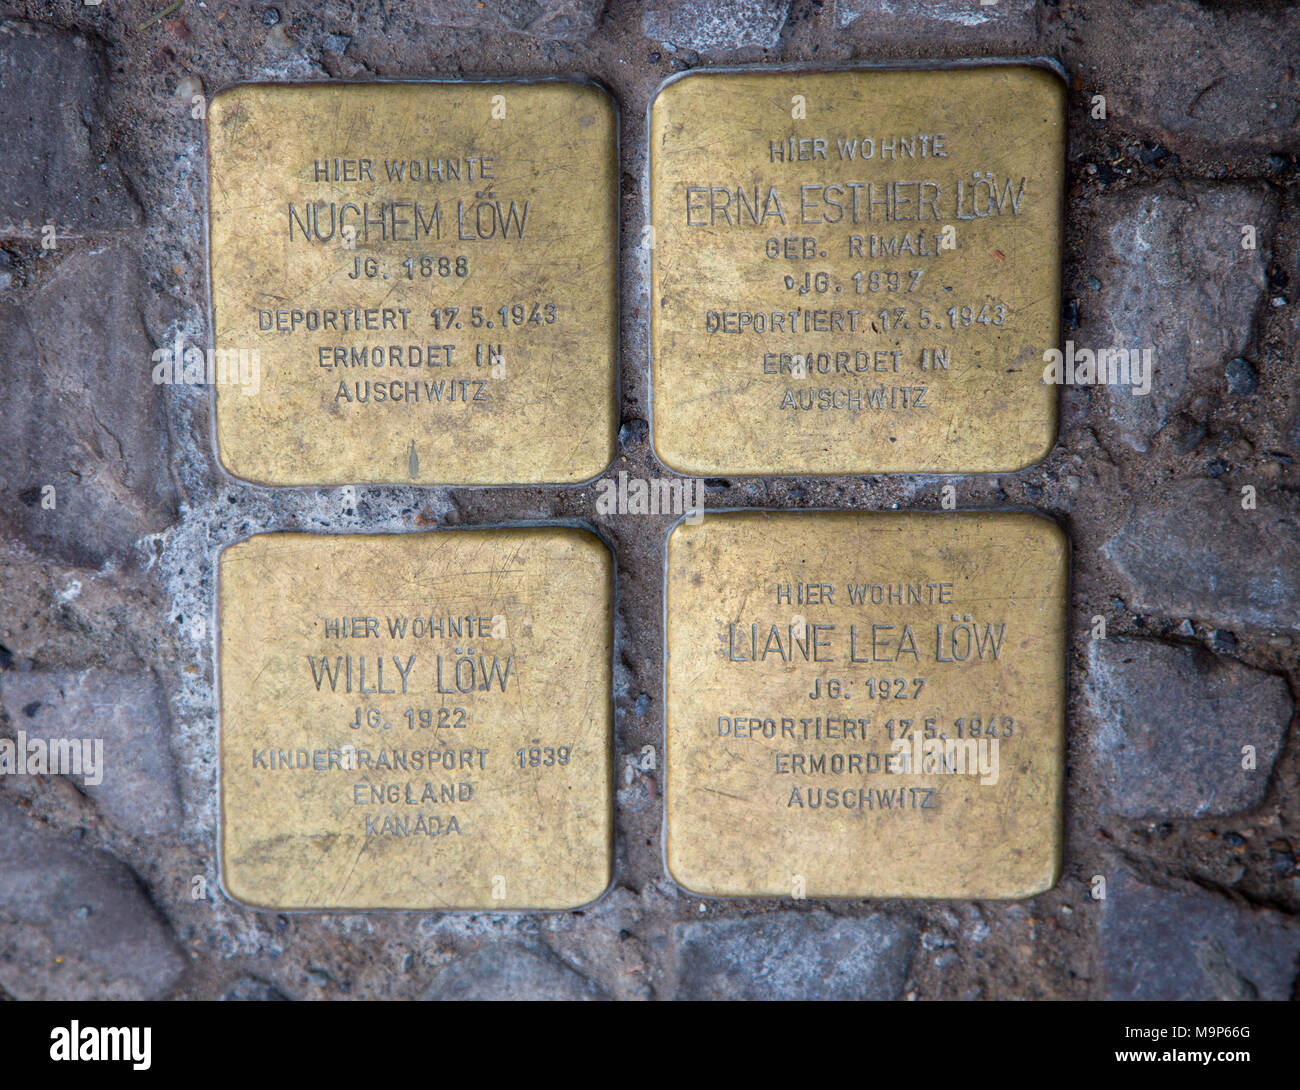 Escollos, placa conmemorativa, la deportación, el holocausto, los judíos víctimas del nacionalsocialismo, Thomasiusstr, Berlín, Alemania. Foto de stock